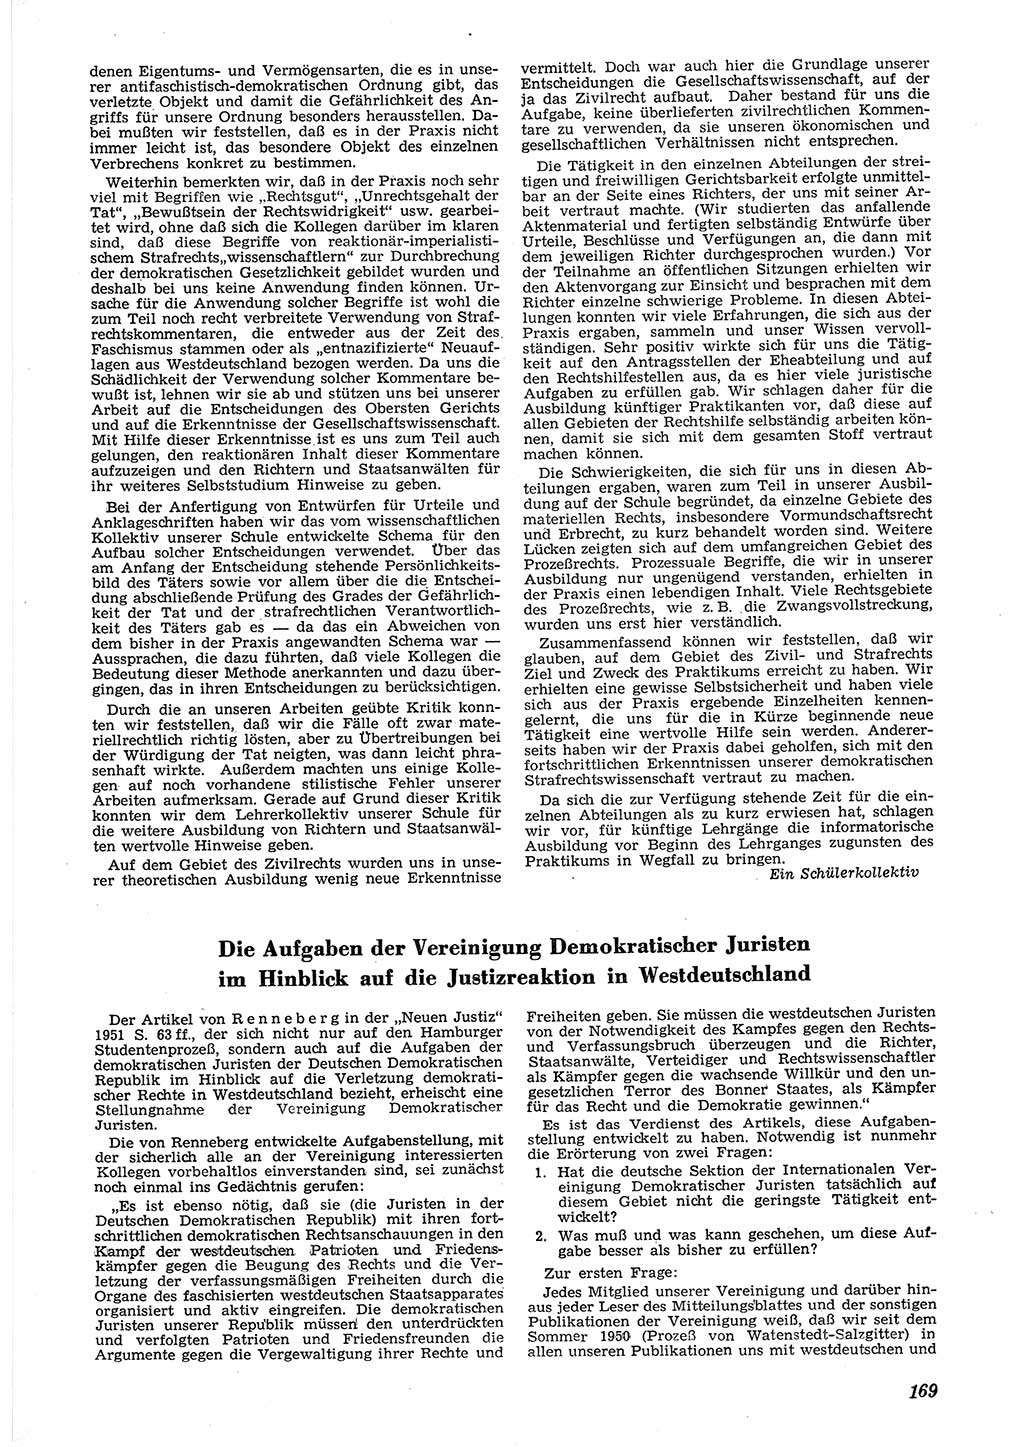 Neue Justiz (NJ), Zeitschrift für Recht und Rechtswissenschaft [Deutsche Demokratische Republik (DDR)], 6. Jahrgang 1952, Seite 169 (NJ DDR 1952, S. 169)